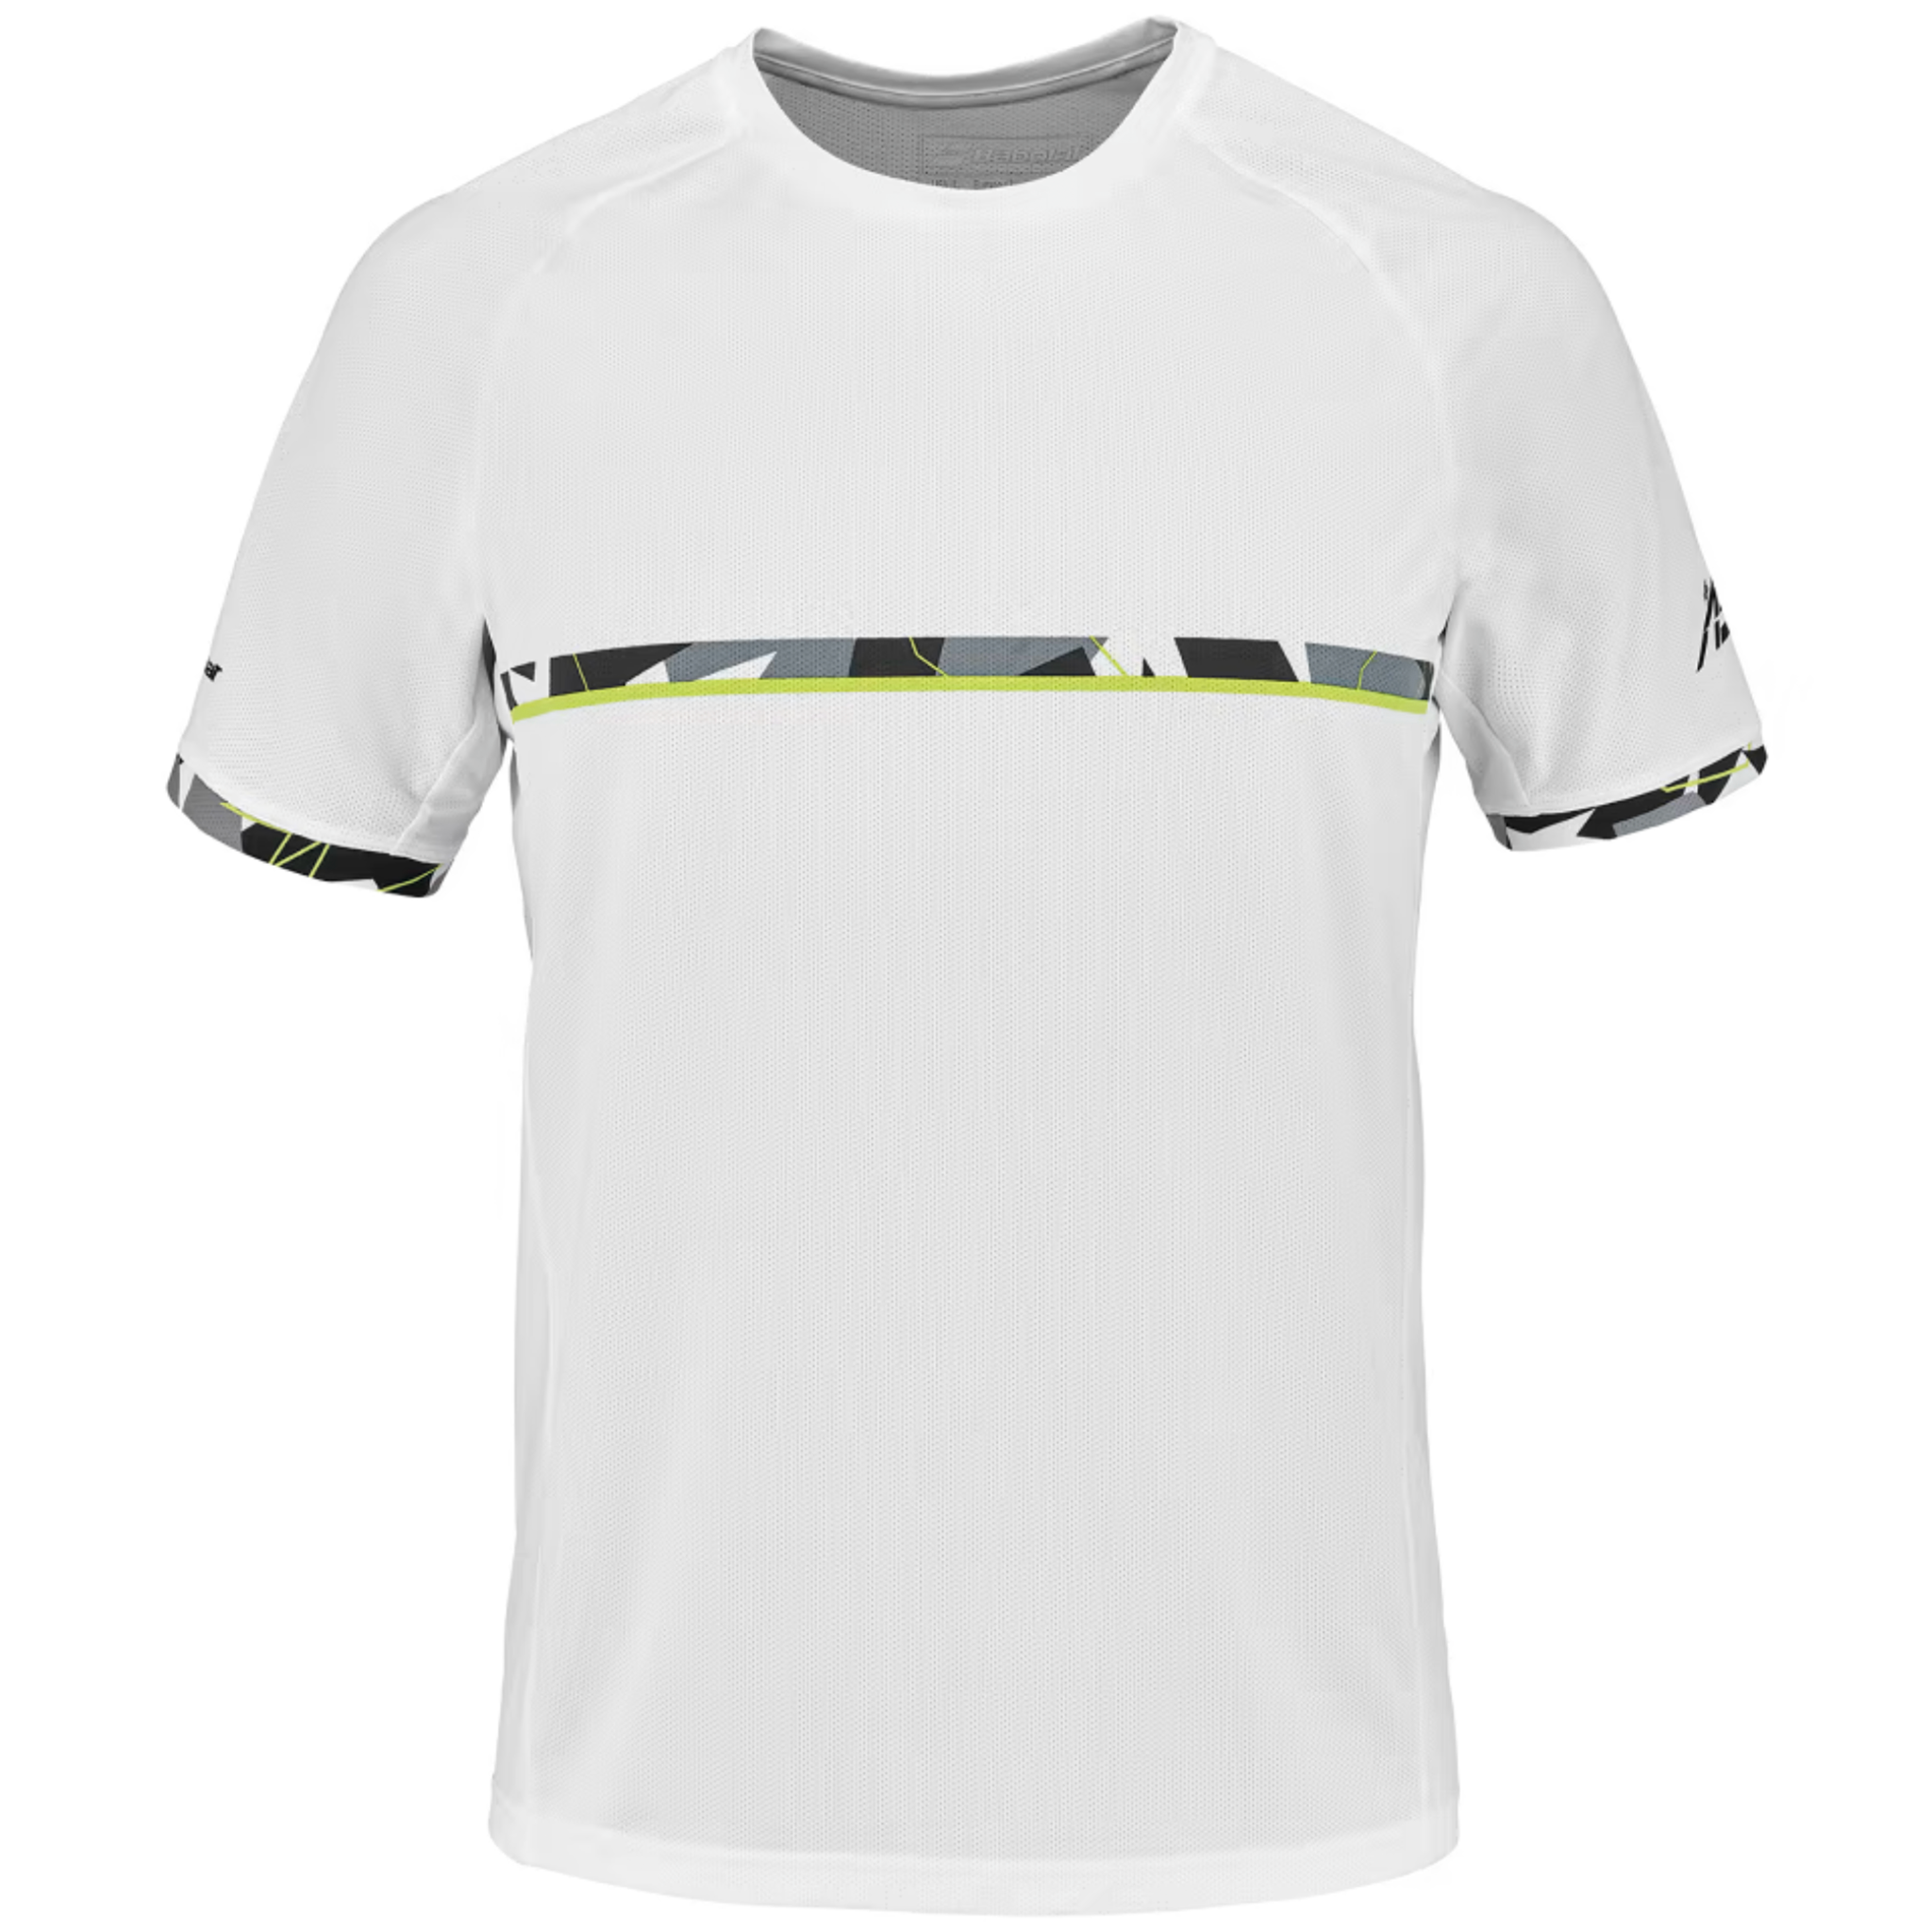 Babolat Aero Crew Neck Men's T-shirt > White